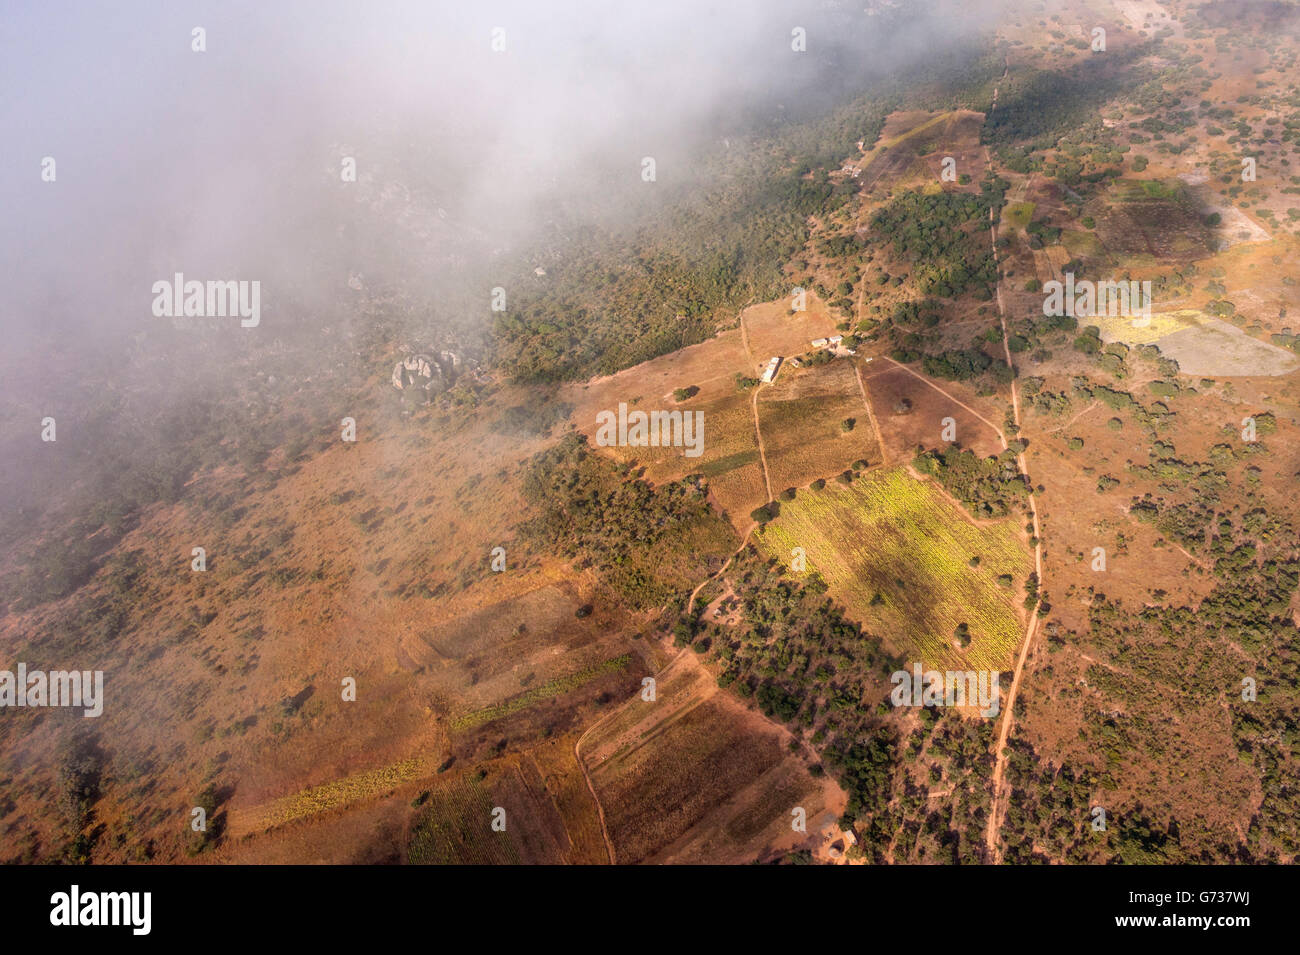 Una veduta aerea dell'agricoltura su piccola scala negli altopiani orientali dello Zimbabwe. Foto Stock